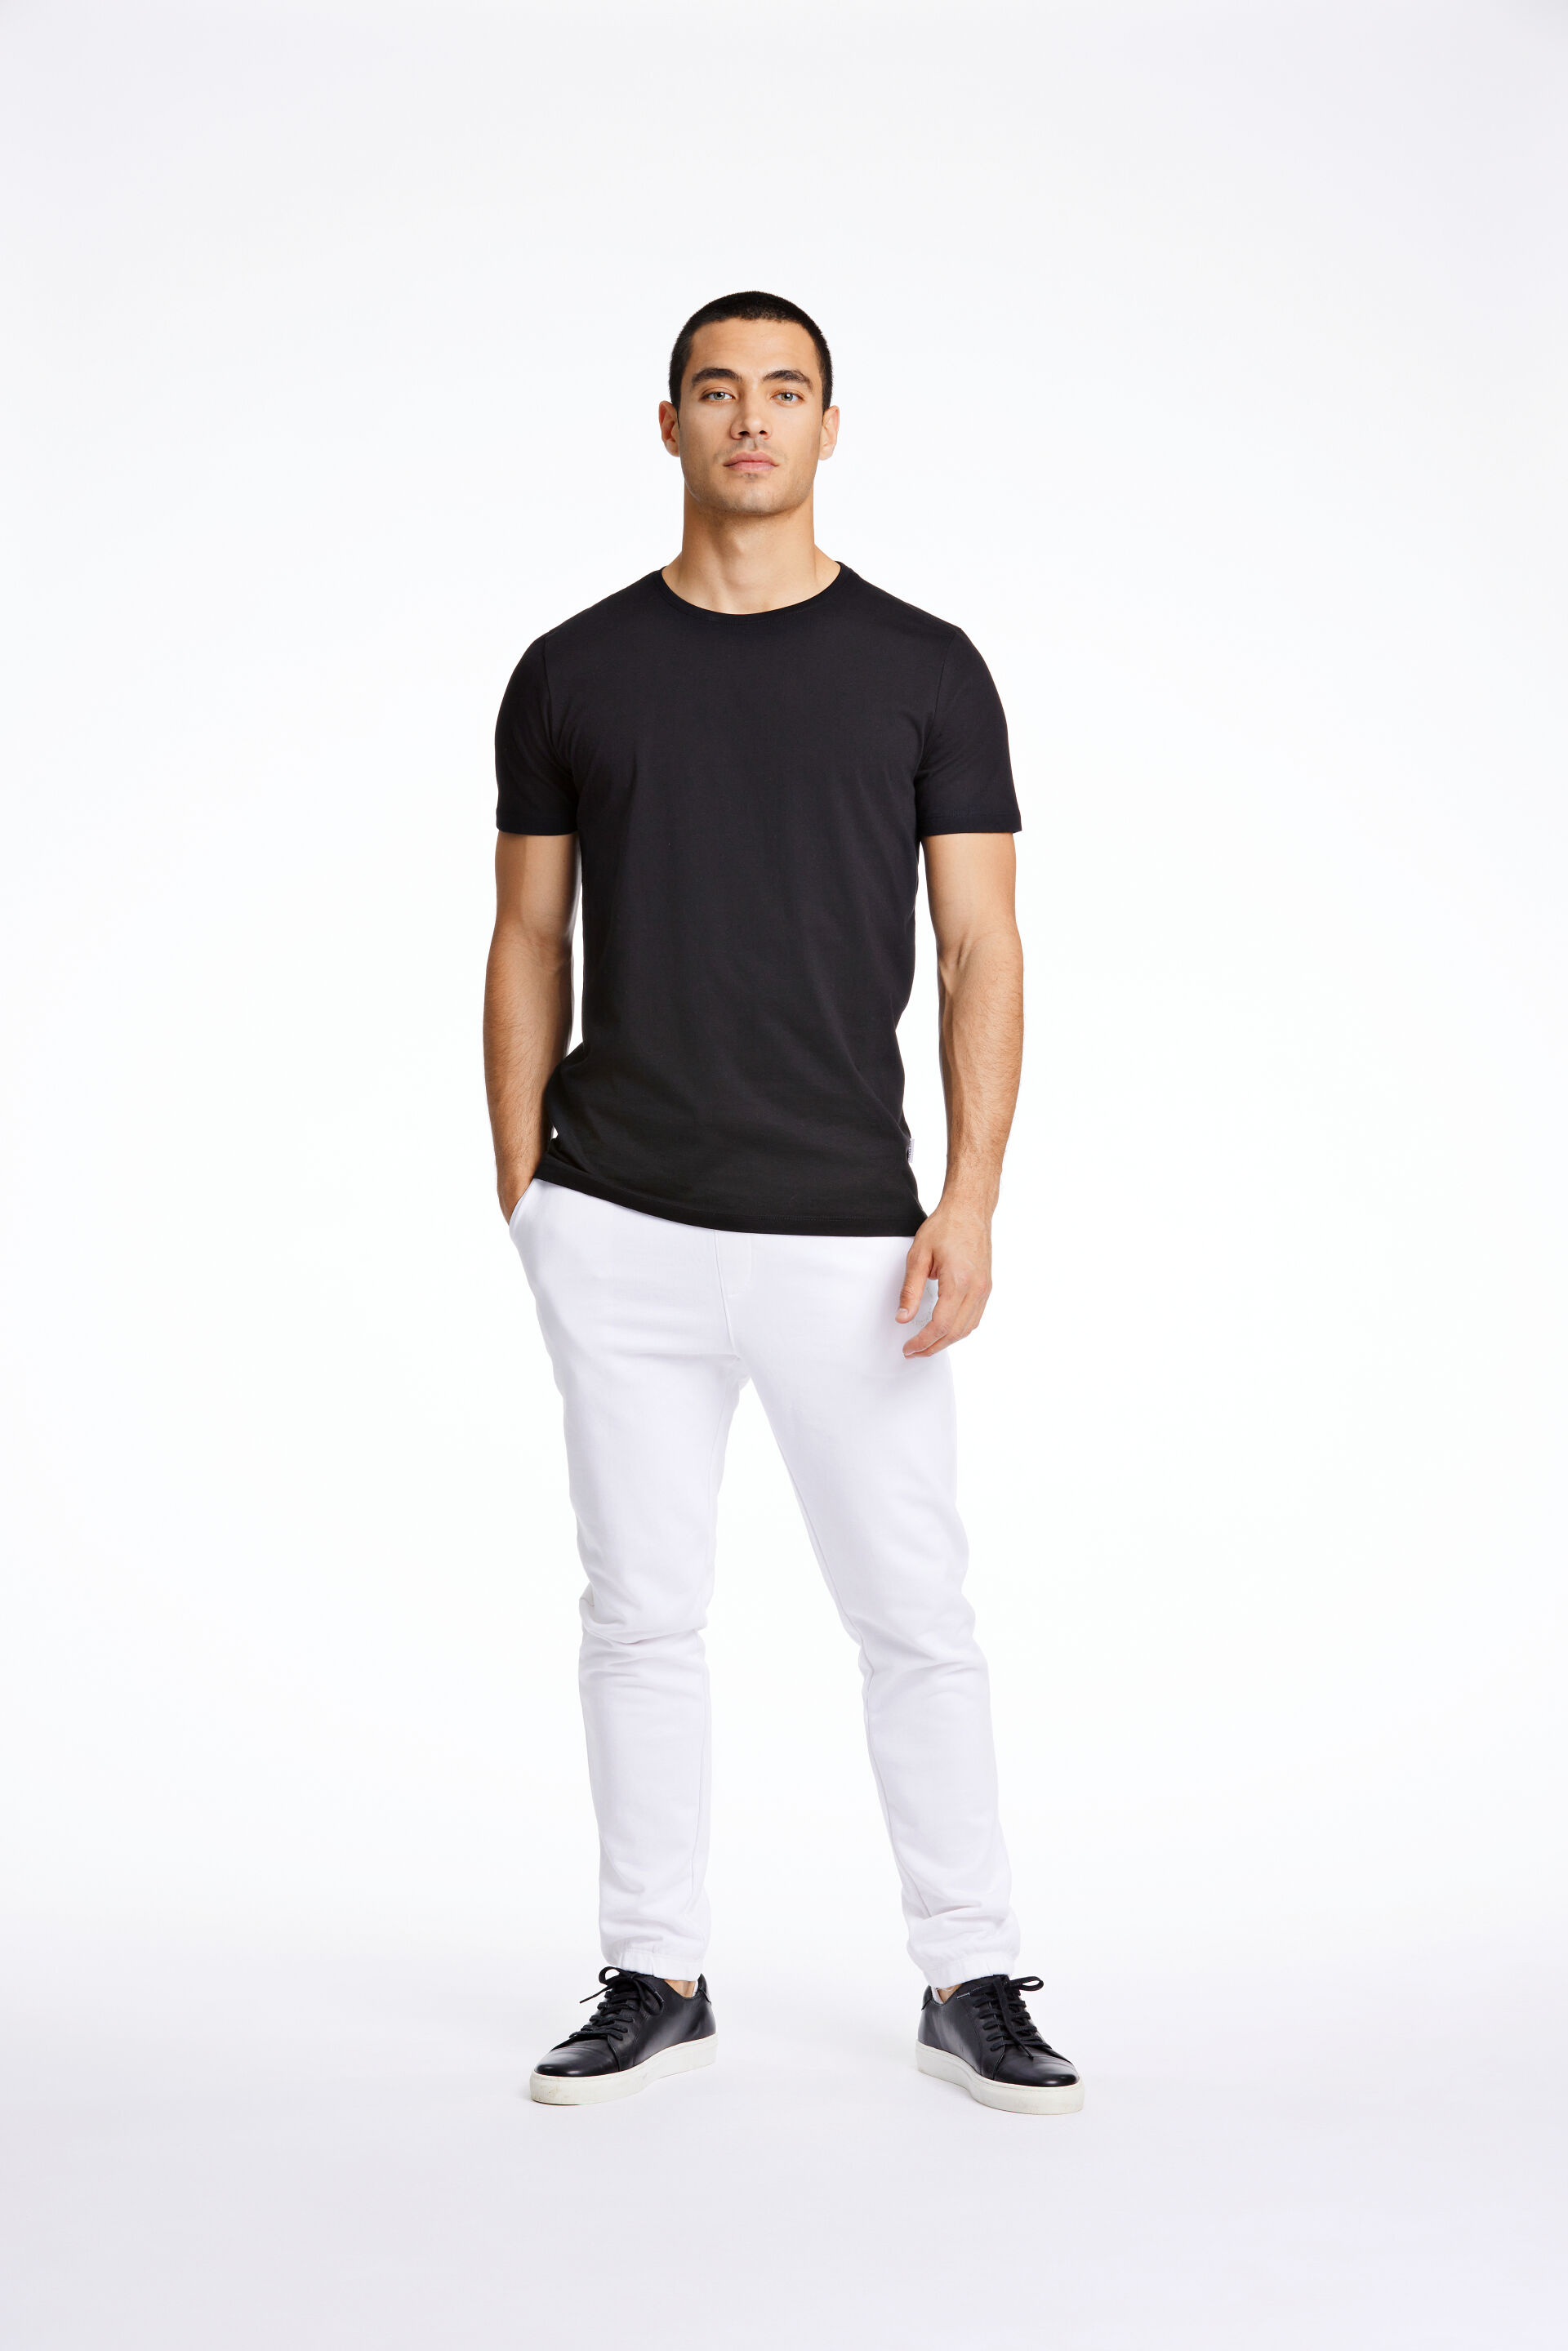 Model i sort Lindbergh T-shirt og hvide Lindbergh sweatpants